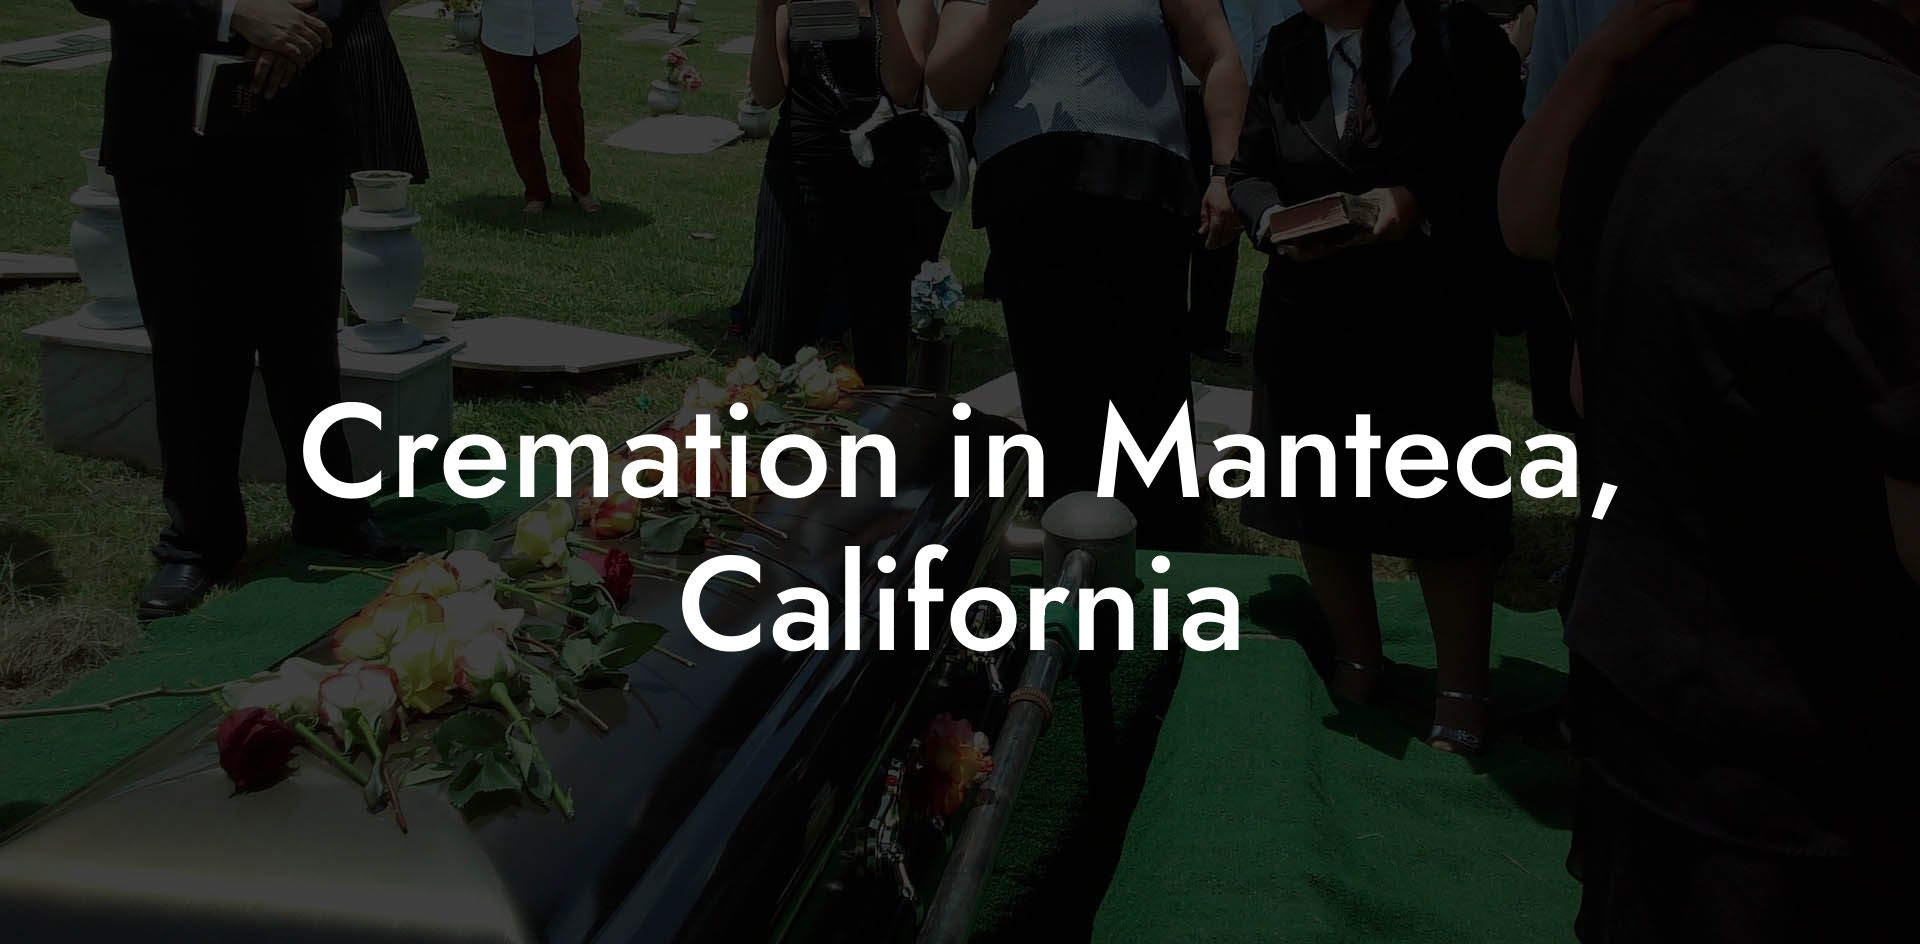 Cremation in Manteca, California